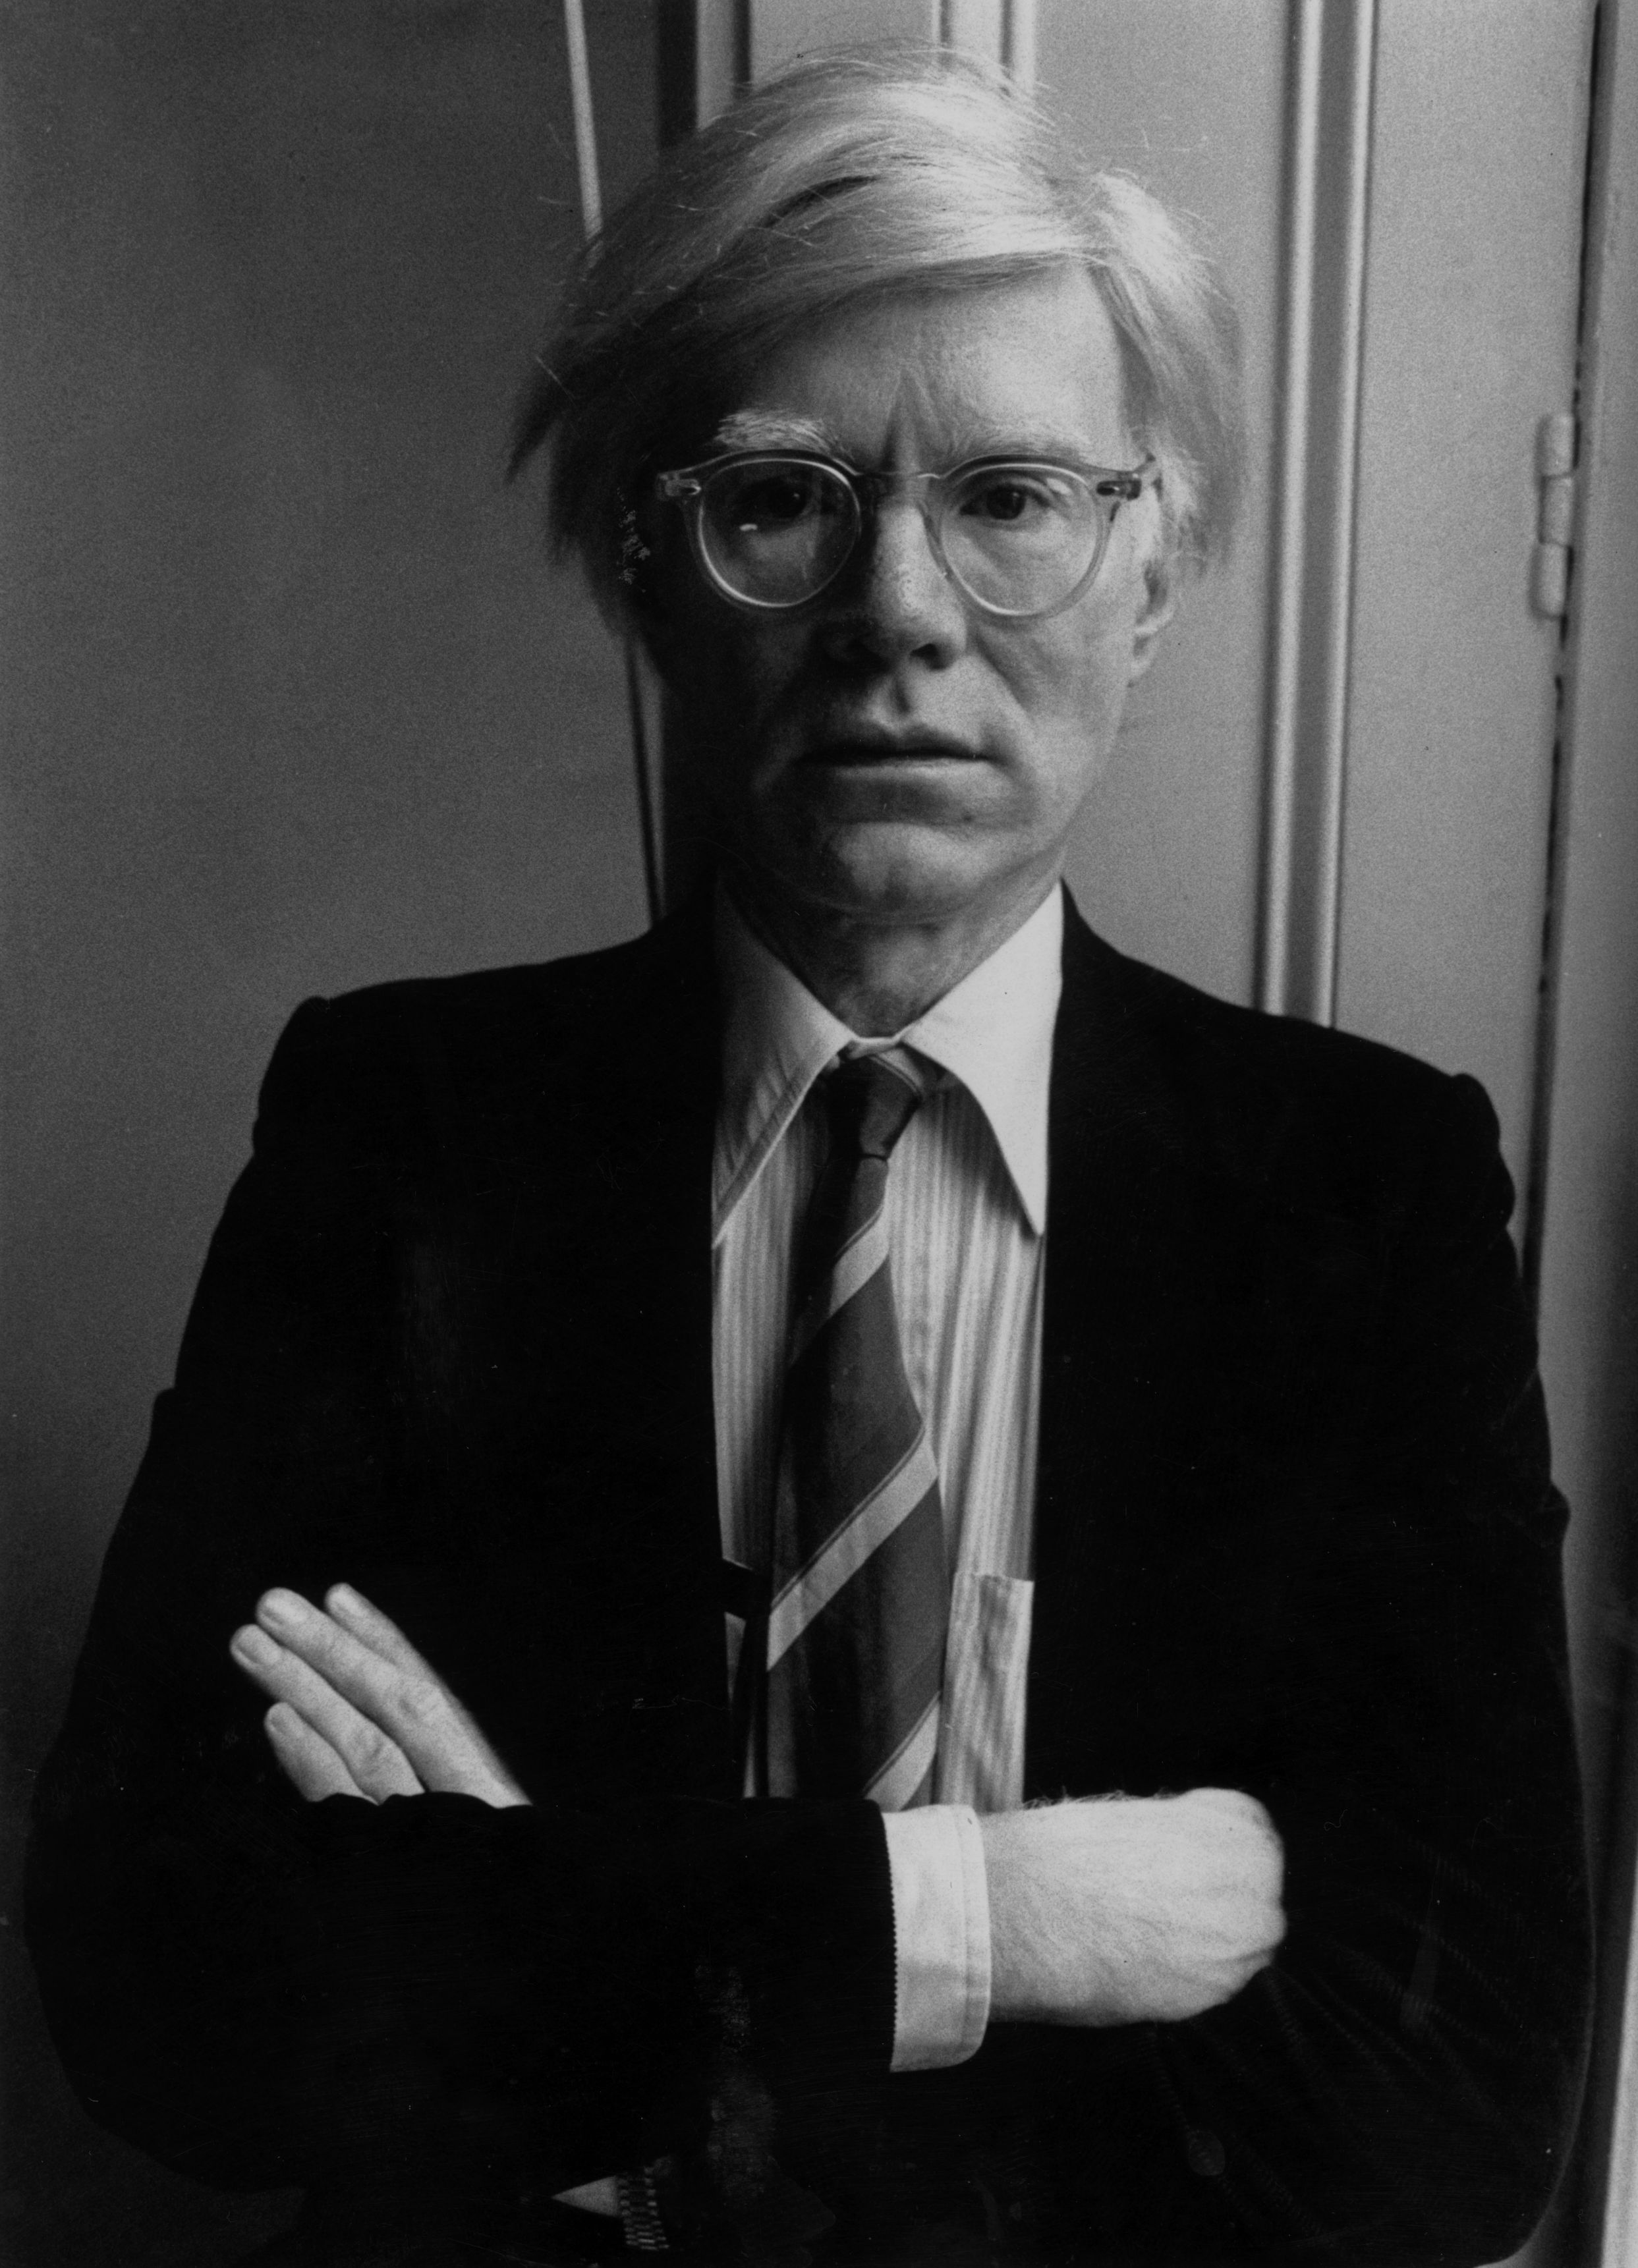 Andy Warhol - 6 augustus 1928 - 22 februari 1987